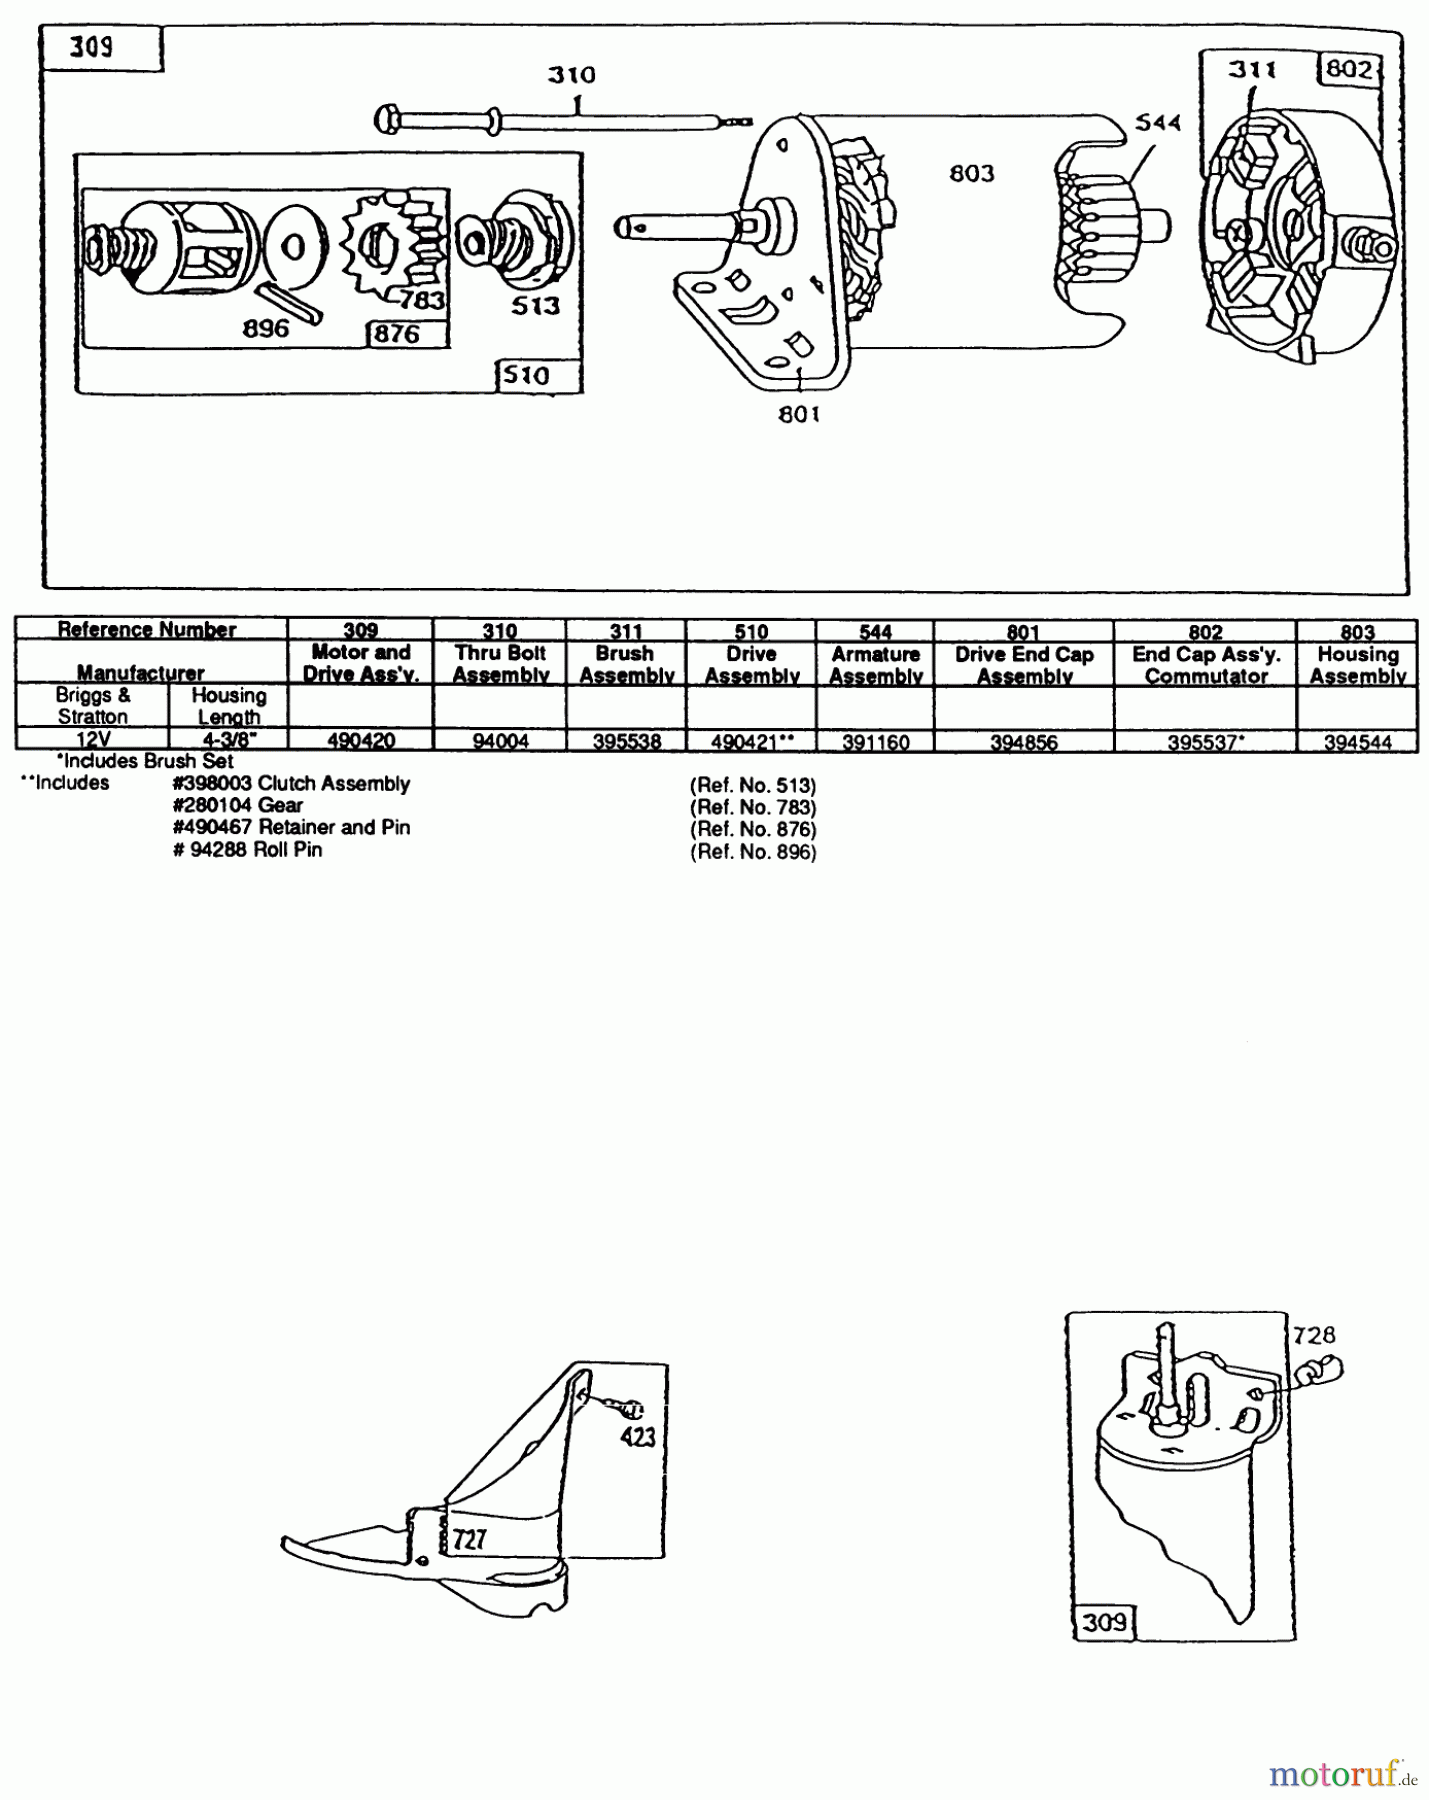  Toro Neu Mowers, Lawn & Garden Tractor Seite 1 32-1205A1 (212-5) - Toro 212-5 Tractor, 1991 (1000001-1999999) ENGINE BRIGGS AND STRATTON MODEL 281707-0226-01 #3